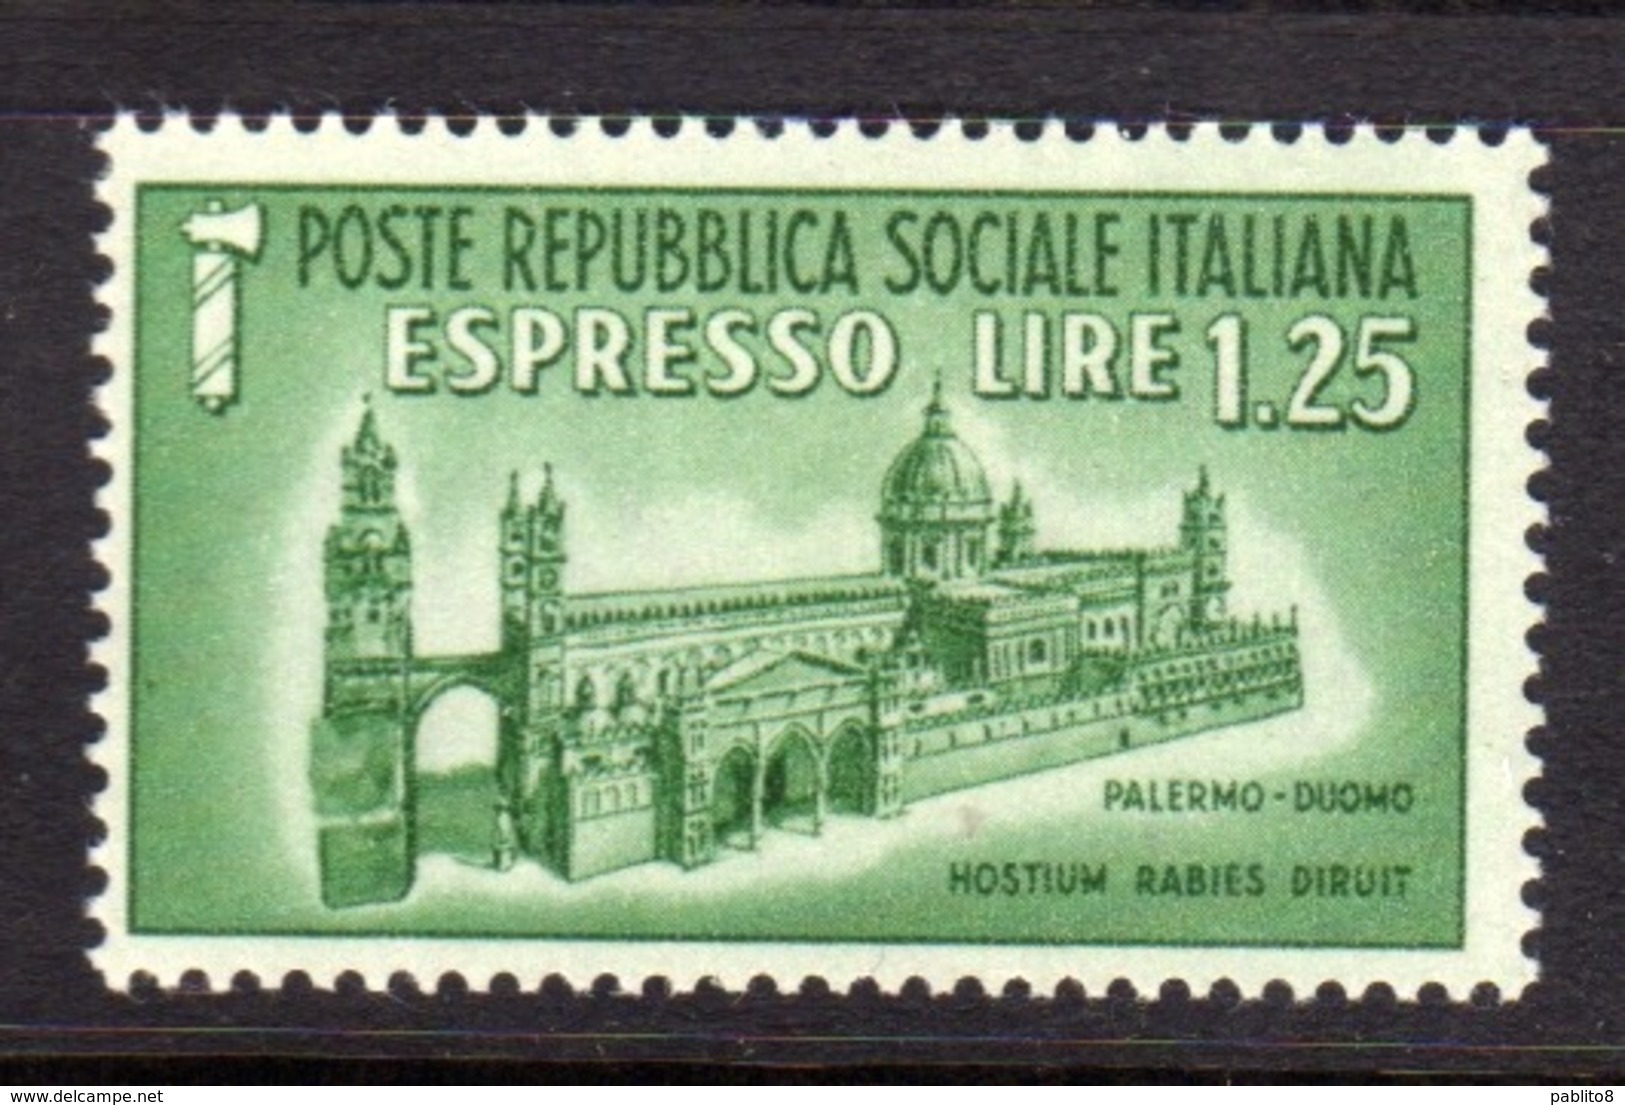 ITALIA REGNO ITALY KINGDOM REPUBBLICA SOCIALE RSI 1944 ESPRESSO SPECIAL DELIVERY RSI DUOMO DI PALERMO LIRE 1,25 MNH - Eilsendung (Eilpost)